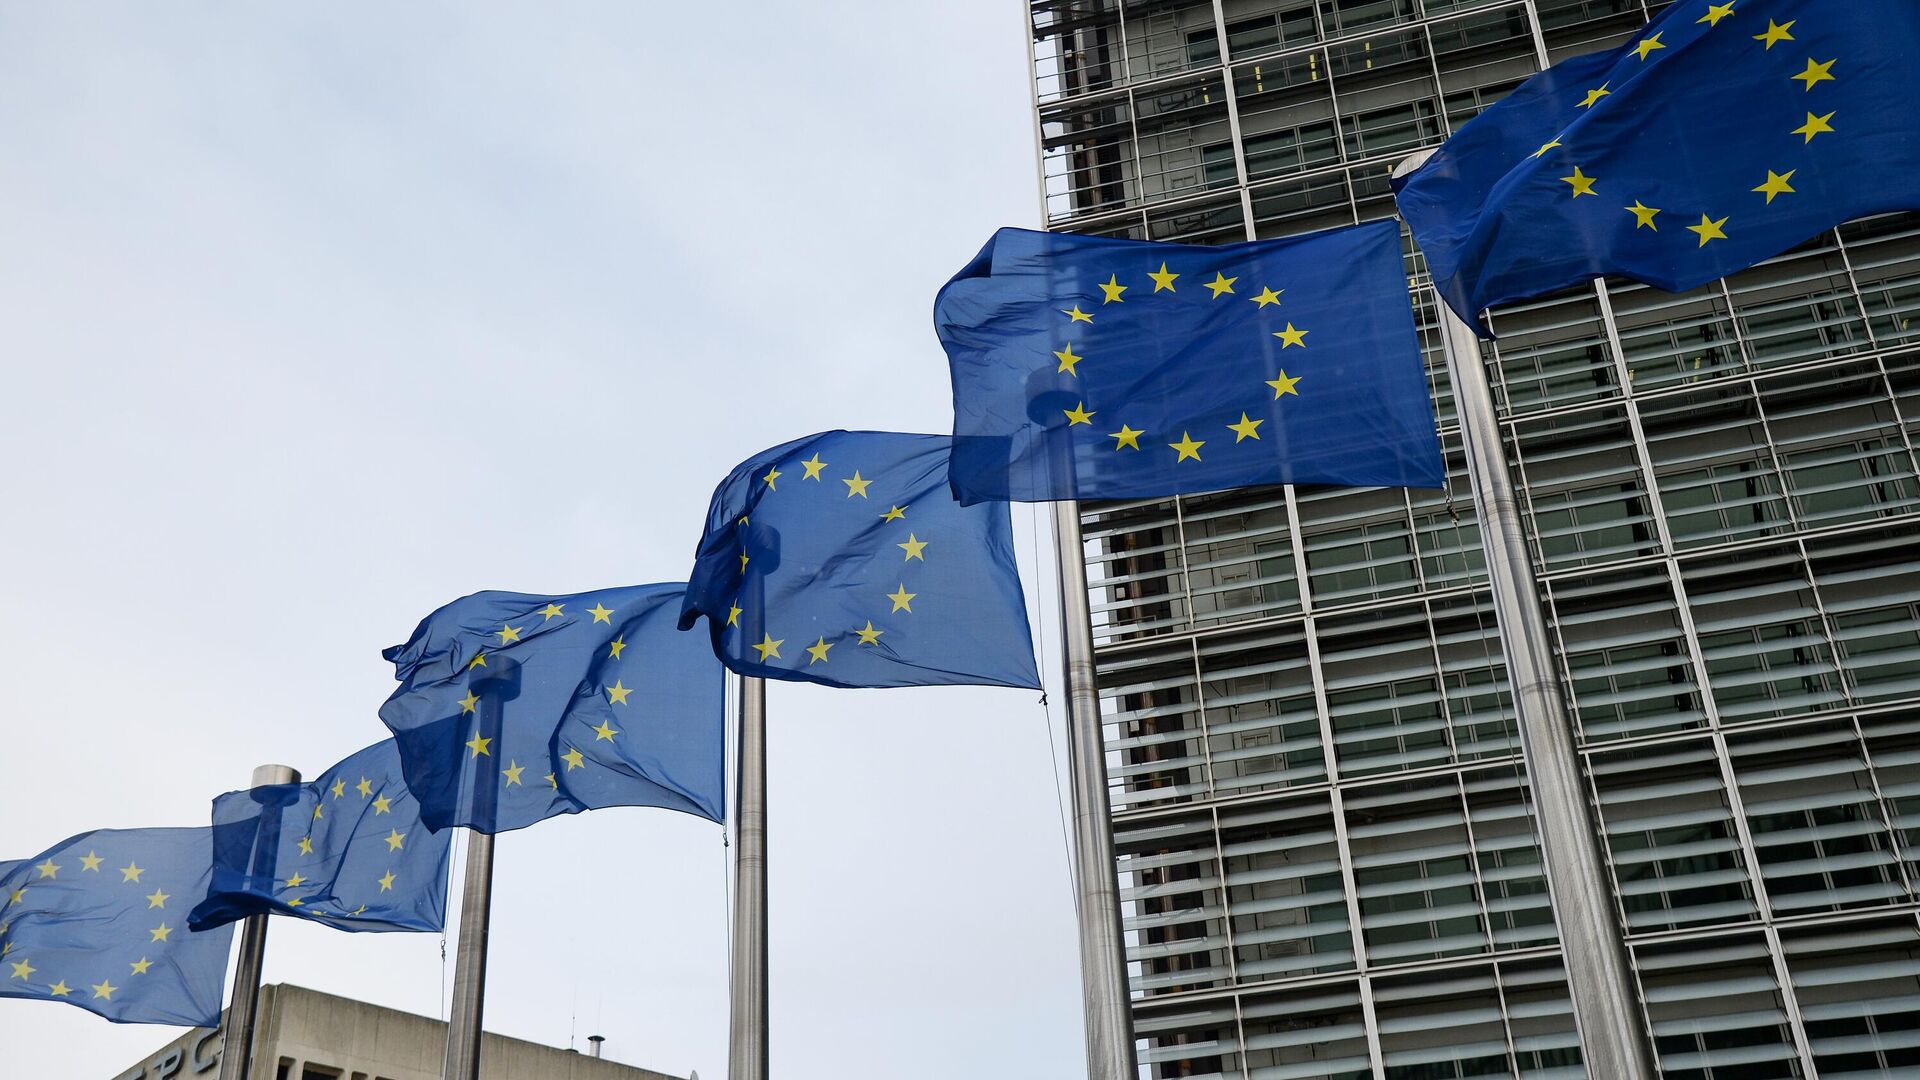 Флаги Евросоюза возле здания штаб-квартиры Европейского парламента в Брюсселе - РИА Новости, 1920, 08.11.2021